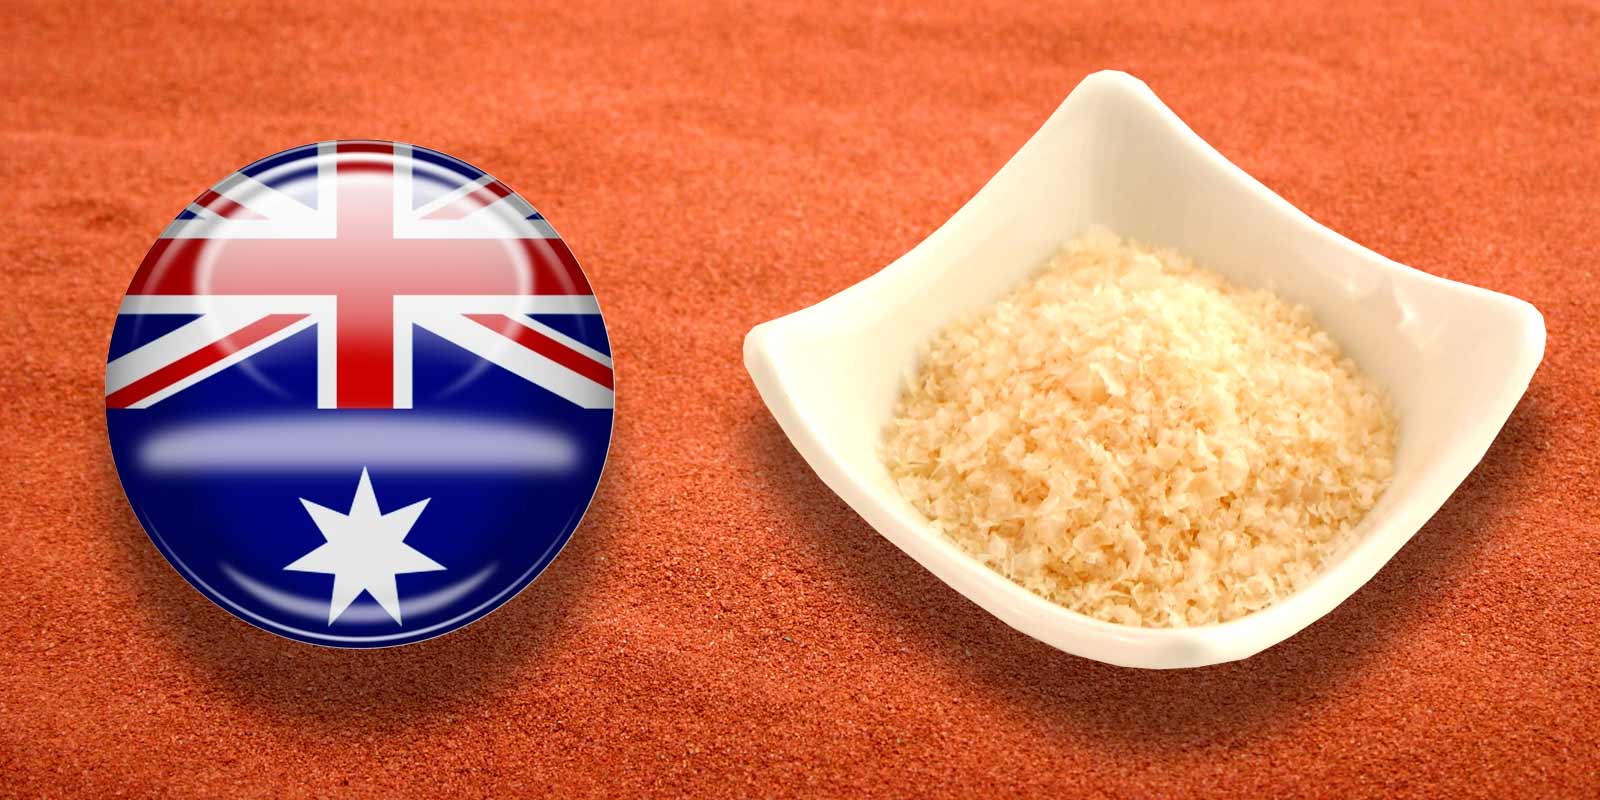 Murray River Salz aus Australien Australisches Murray River-Salz besteht aus subtilen, pfirsichfarbenen Kristallen. 
Die Flakes haben einen milden Geschmack und sind ideal zum Nachwürzen oder als Tischsalz zu verwenden. Sie schmelzen förmlich zwischen den Fingern.